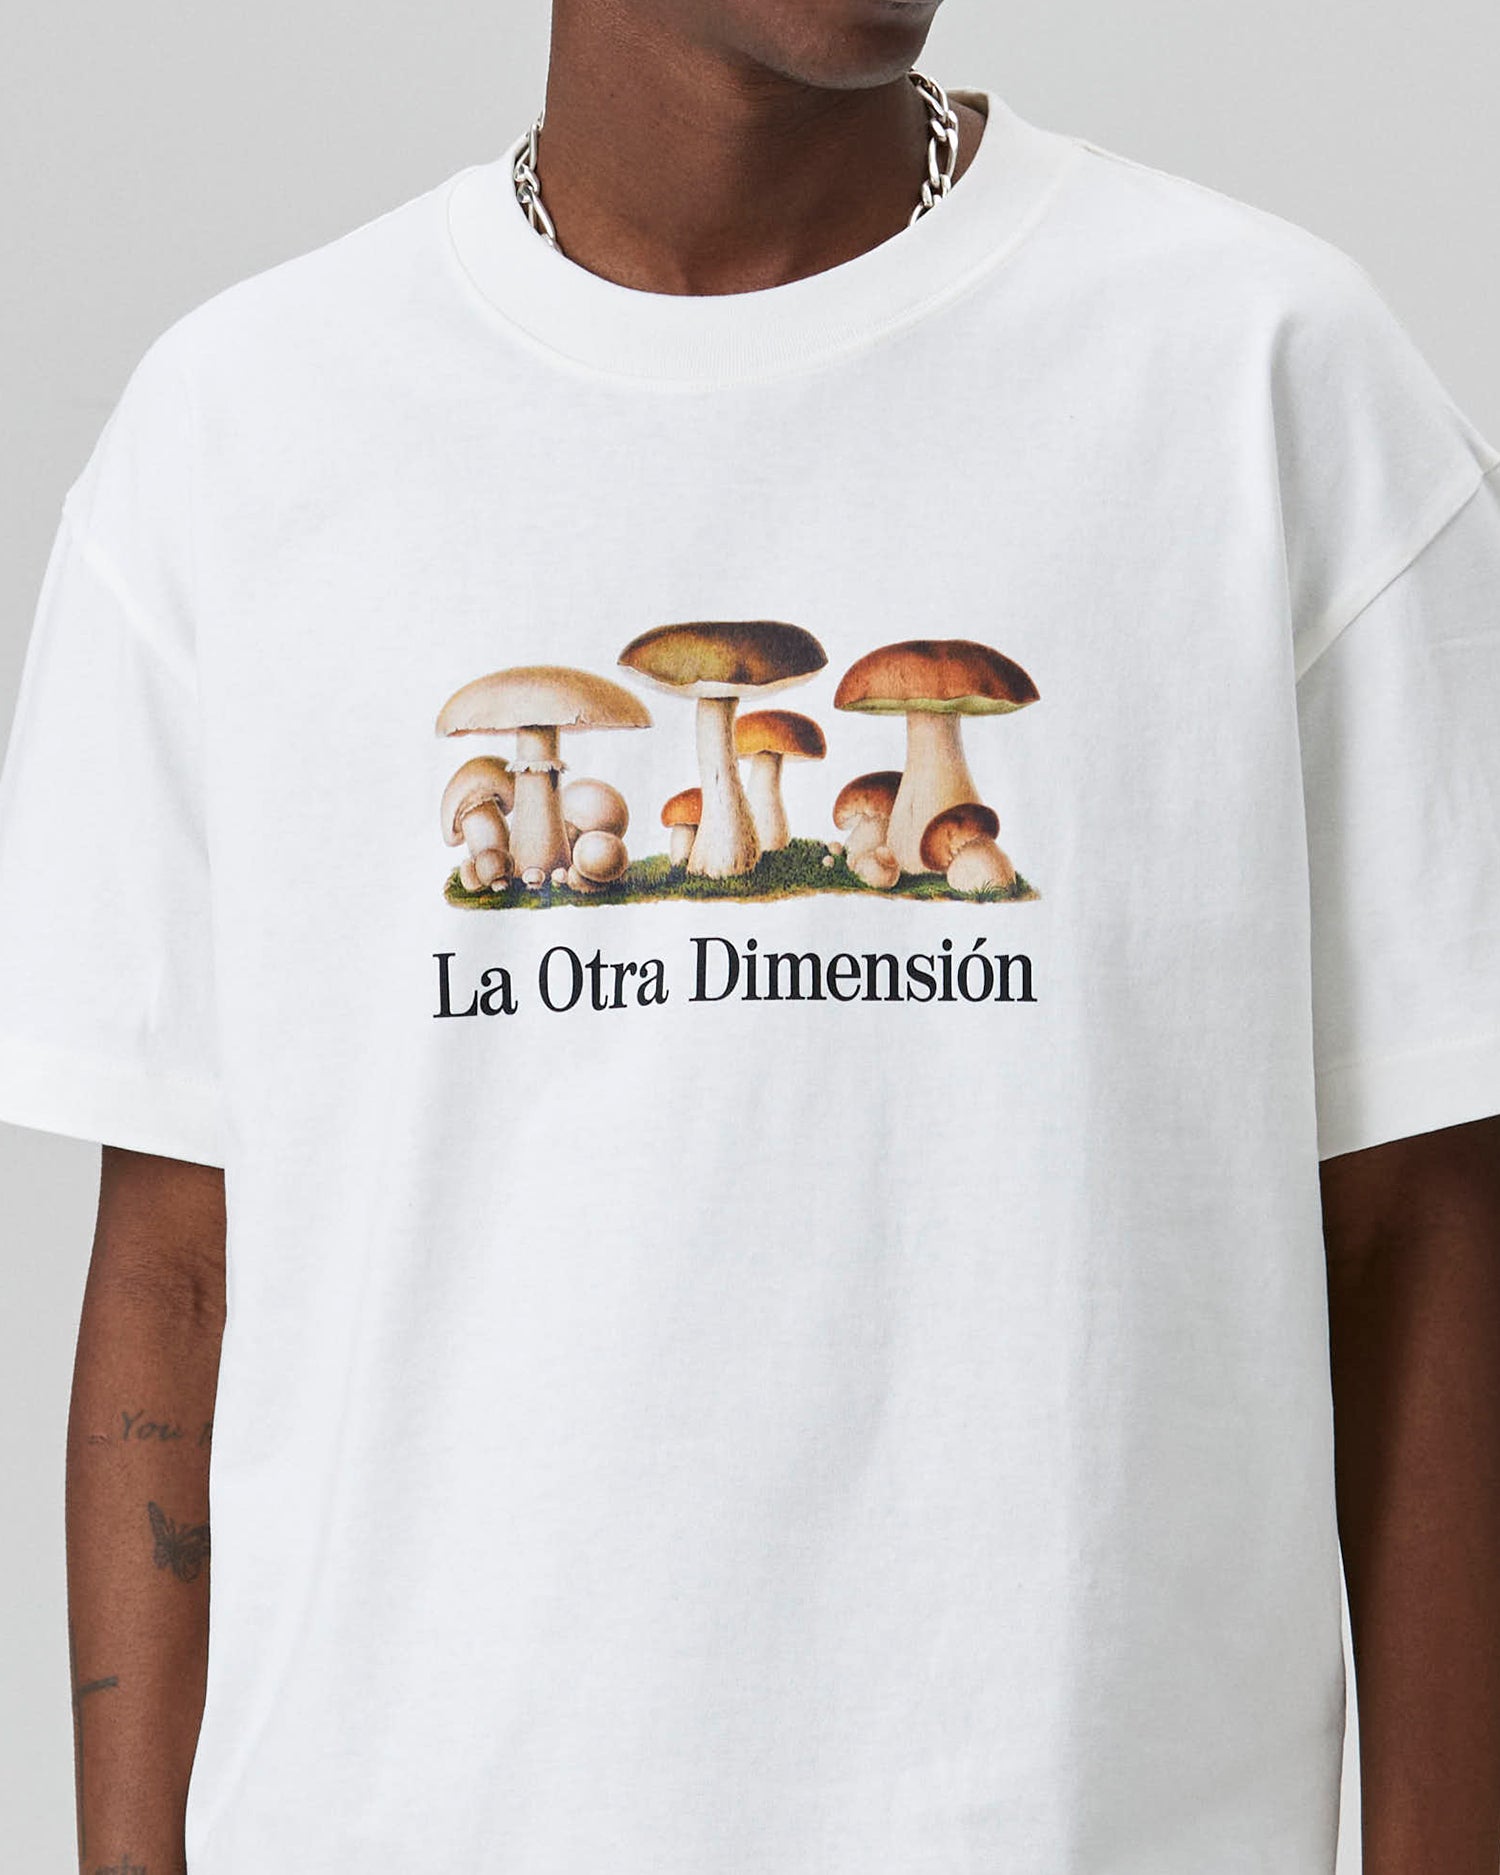 Dimension T-shirt